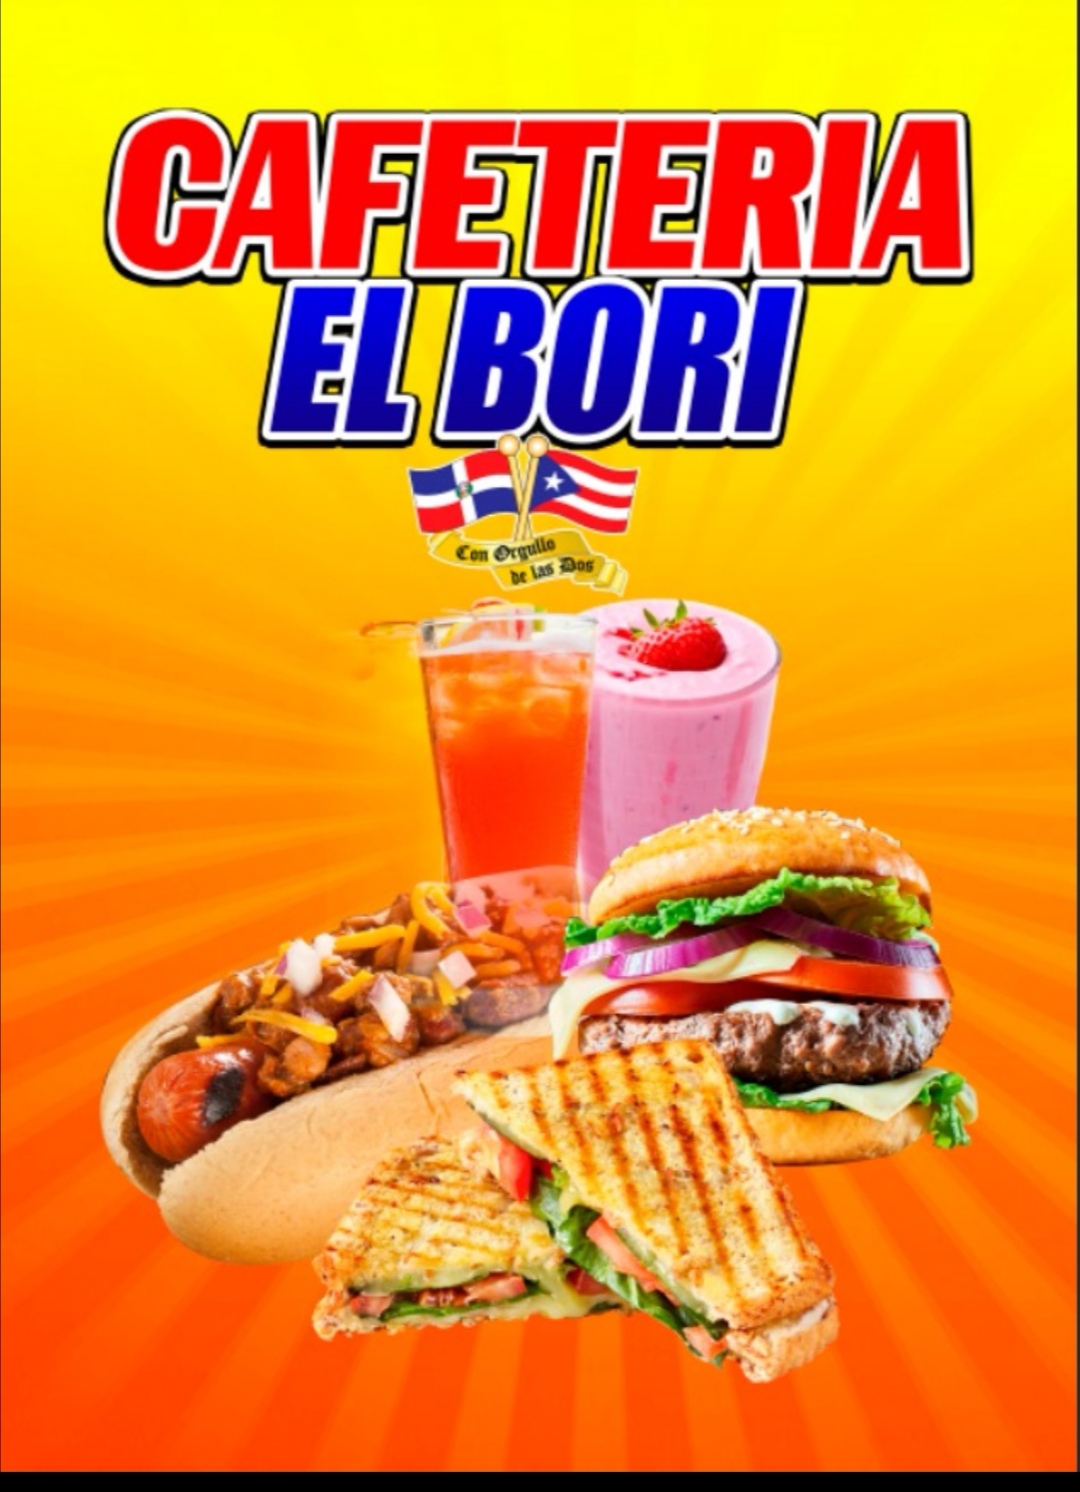 Cafetería El bori